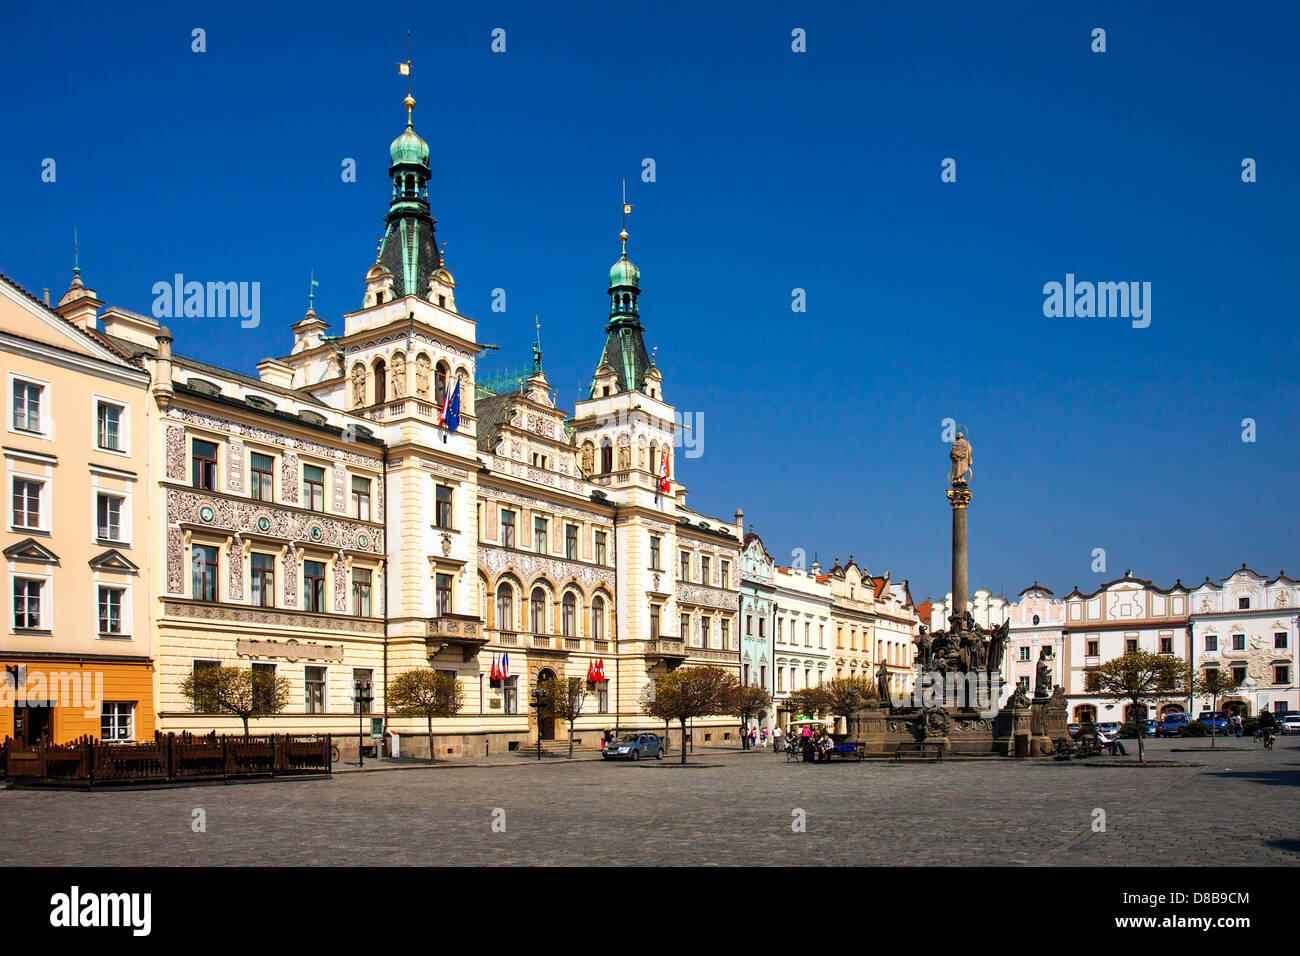 Czech Republic - town Pardubice - Renaissance guild-hall on Perstynske square Stock Photo